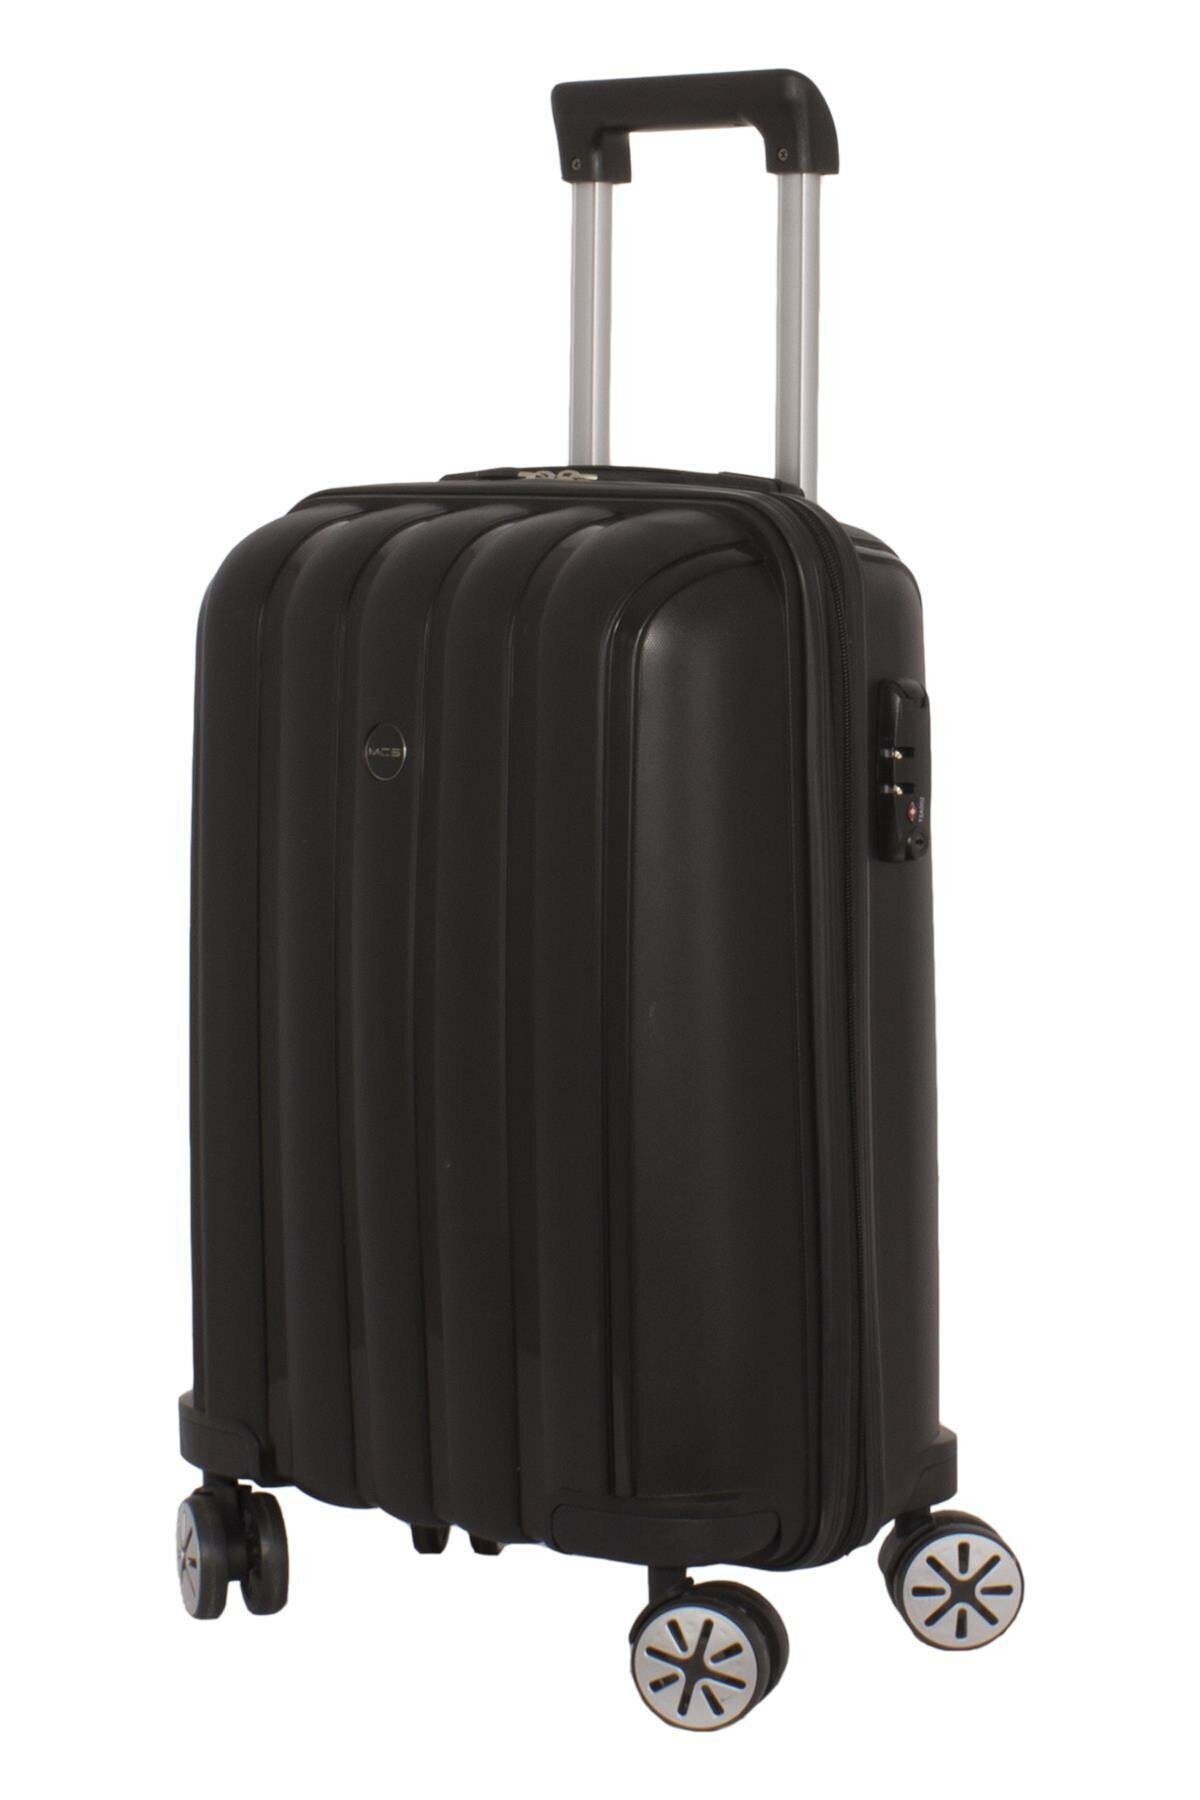 Маленький чемодан для ручьной клади из полипропилена MCS V305 S BLACK! Для 8-10 кг! - 5